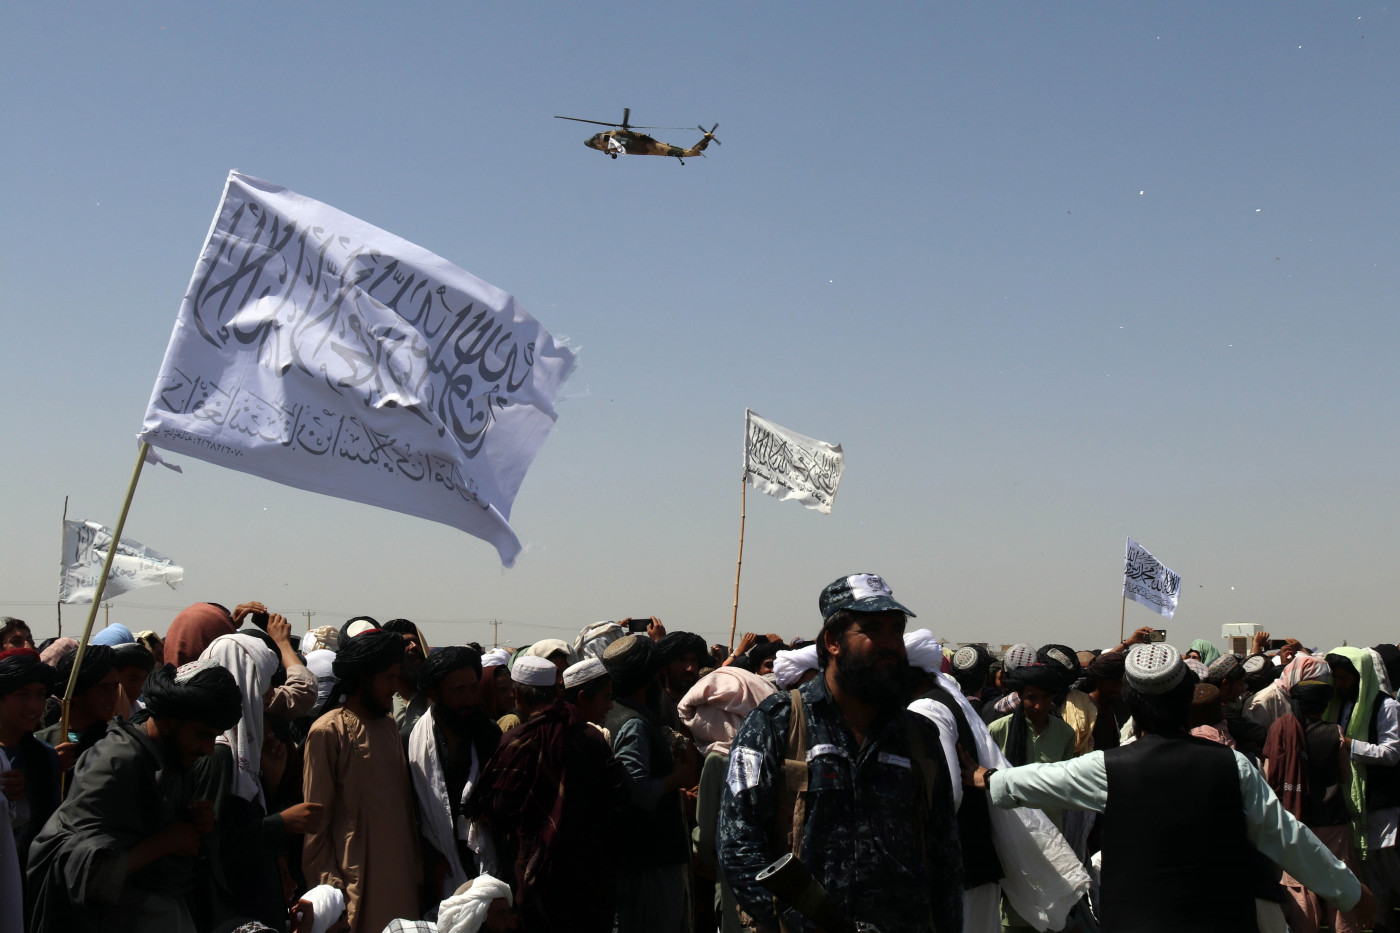 Helicóptero sobrevoa apoiadores do Talibã enquanto eles se reúnem em Kandahar, Afeganistão, 01 de setembro de 202